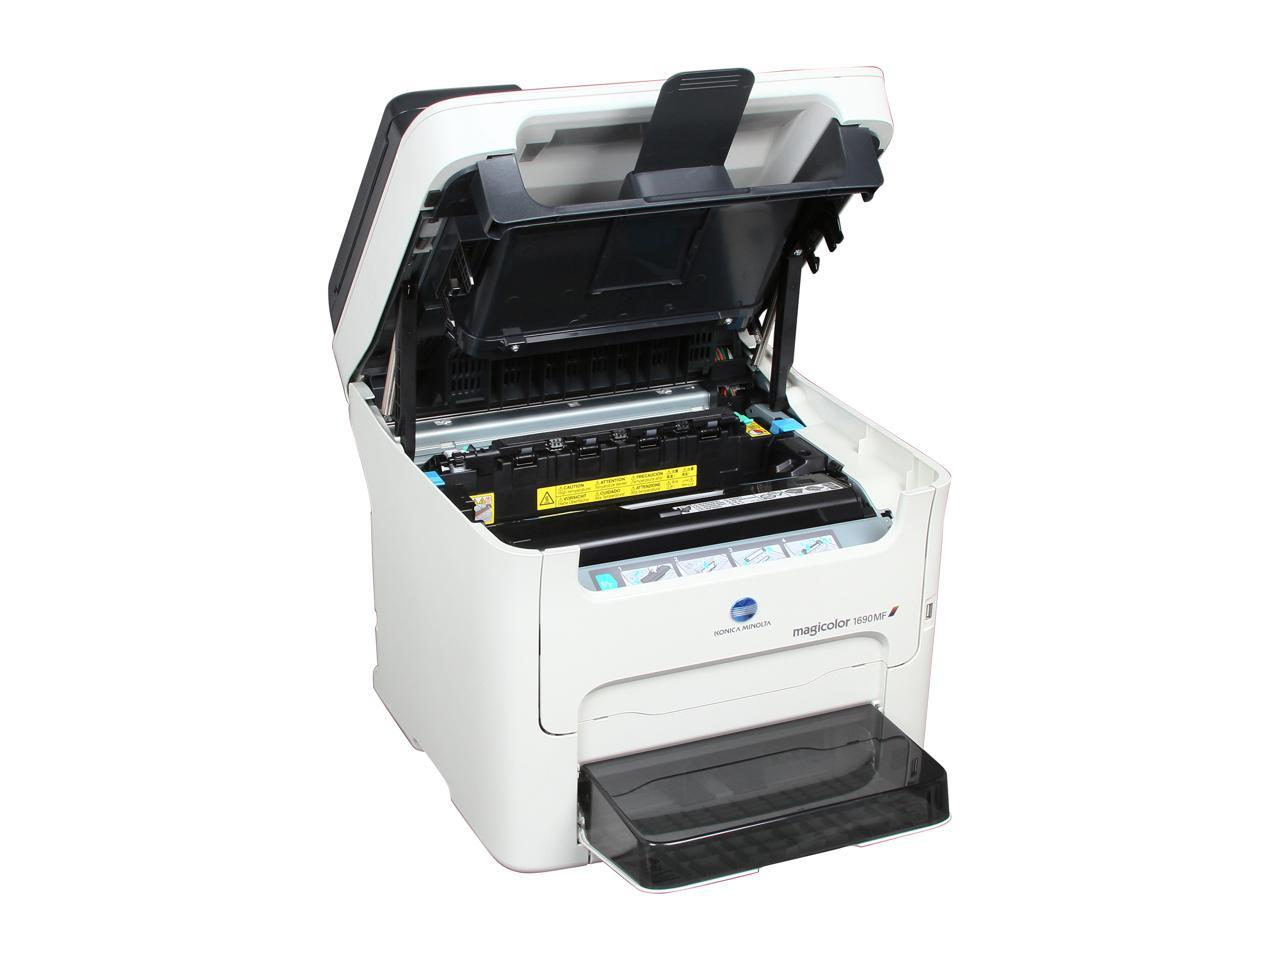 Software Printer Magicolor 1690Mf - Magicolor 1680mf Magicolor 1690mf Manualzz / Does anyone ...